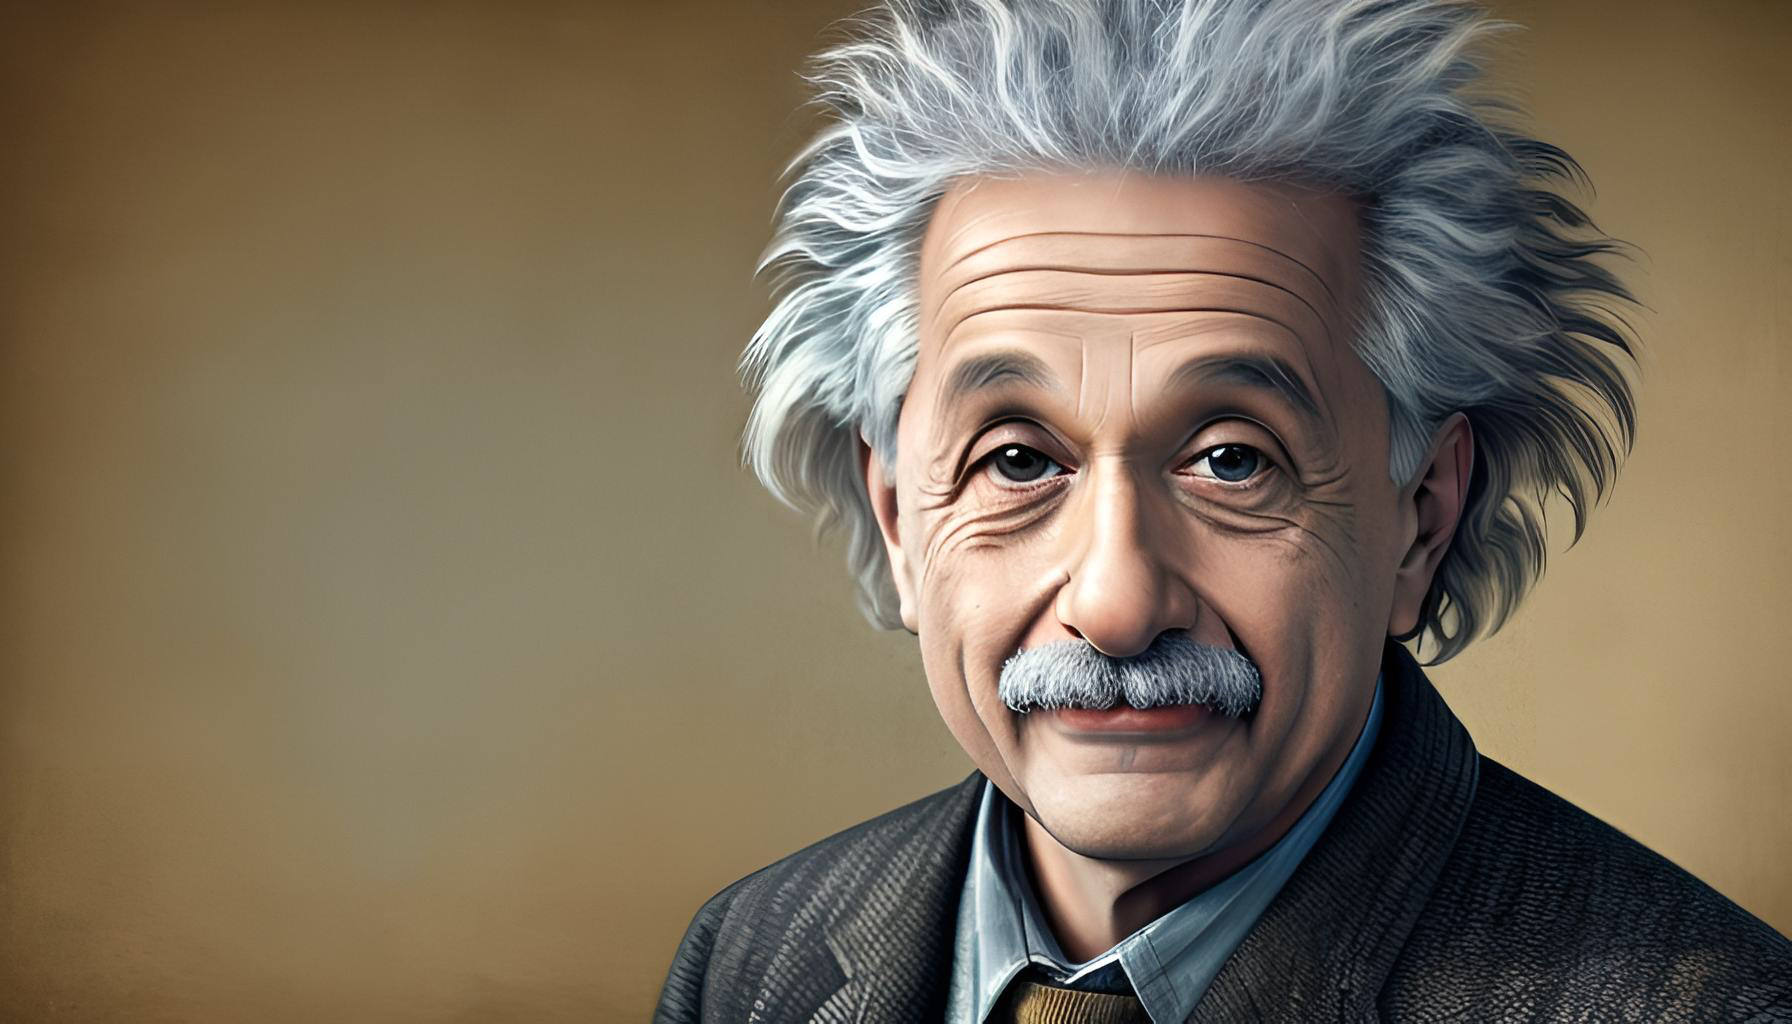 爱因斯坦全面屏壁纸图片